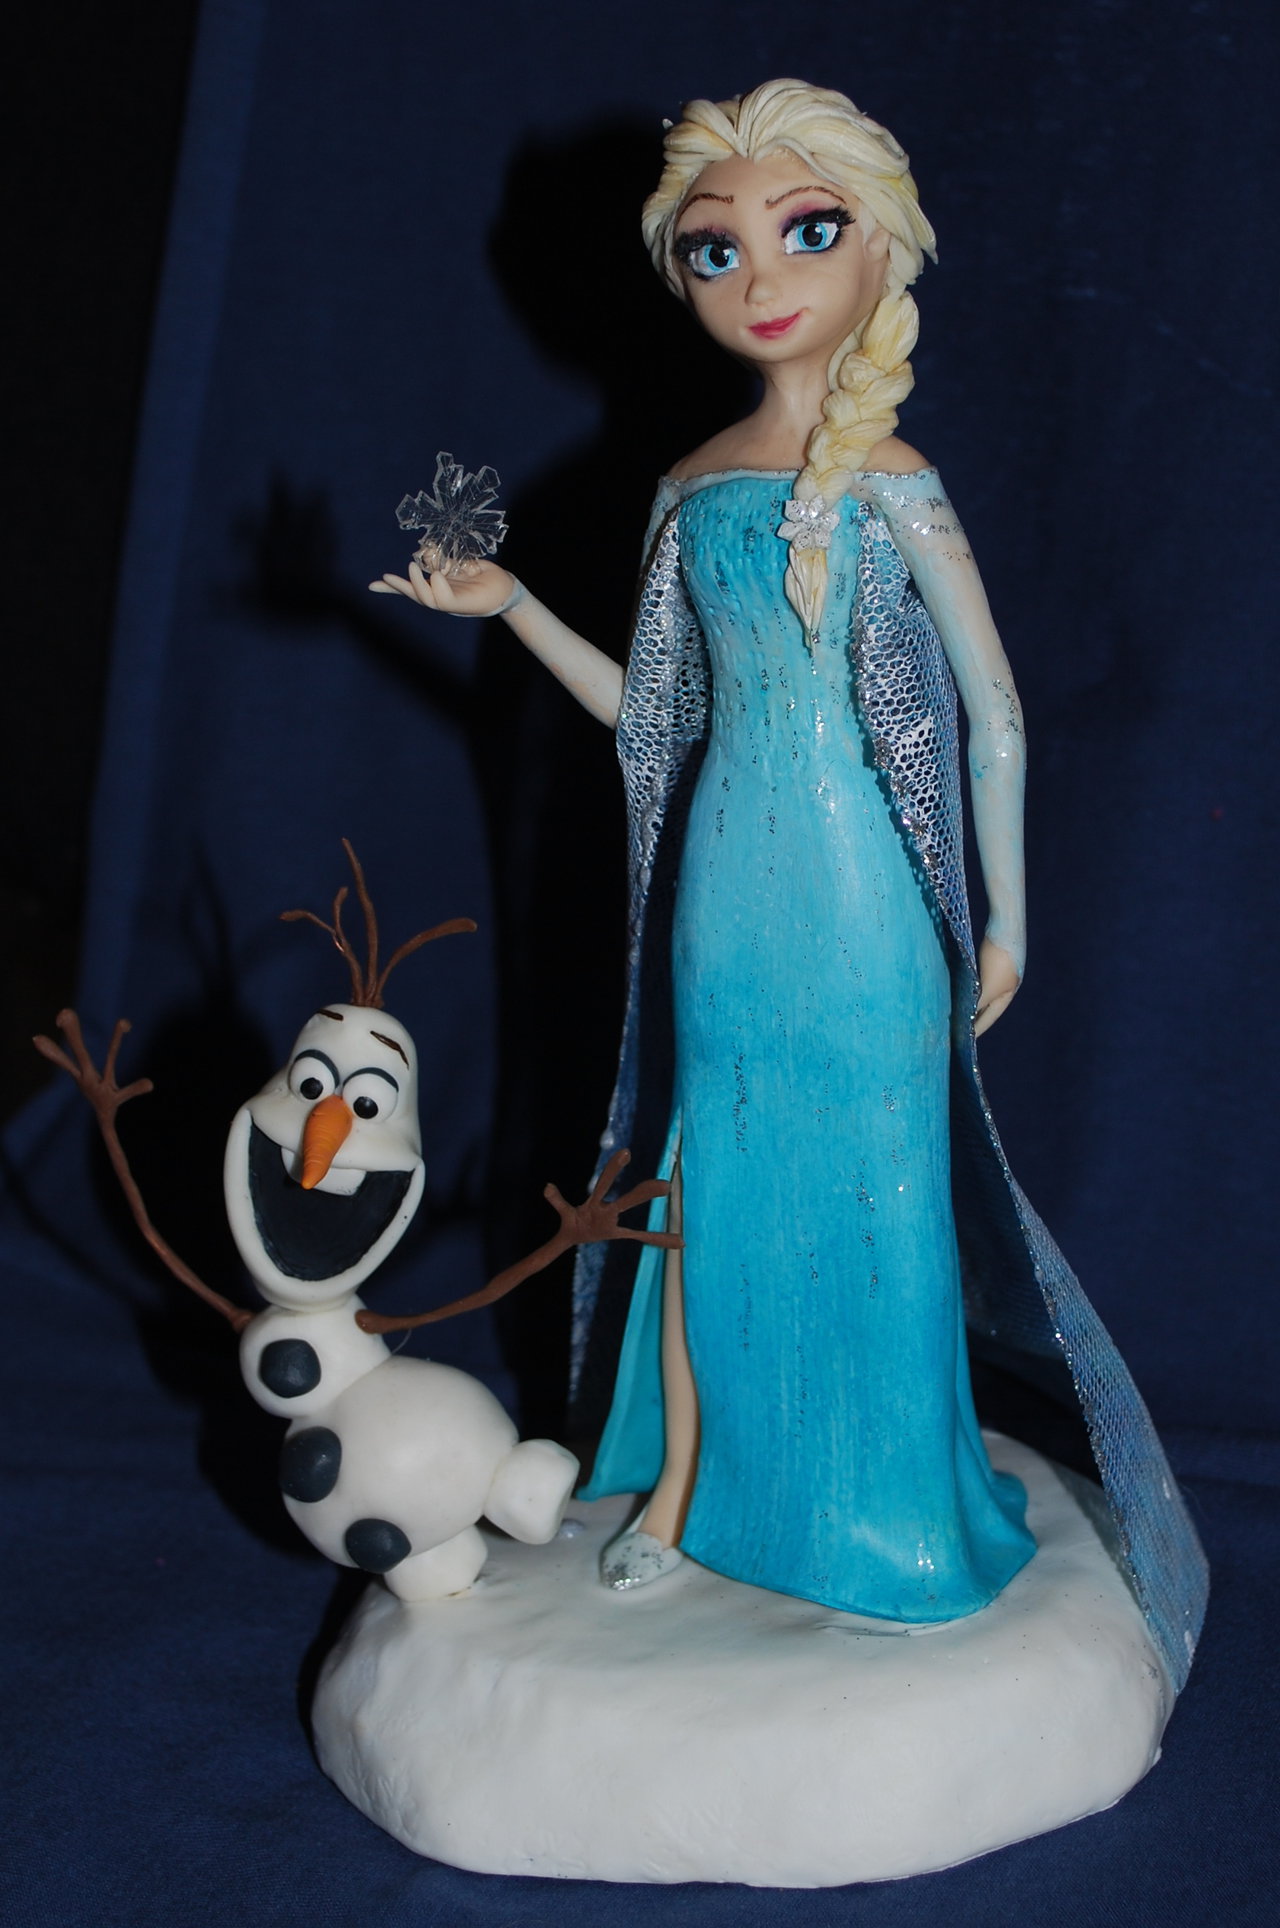 Olaf Cake Topper and Elsa